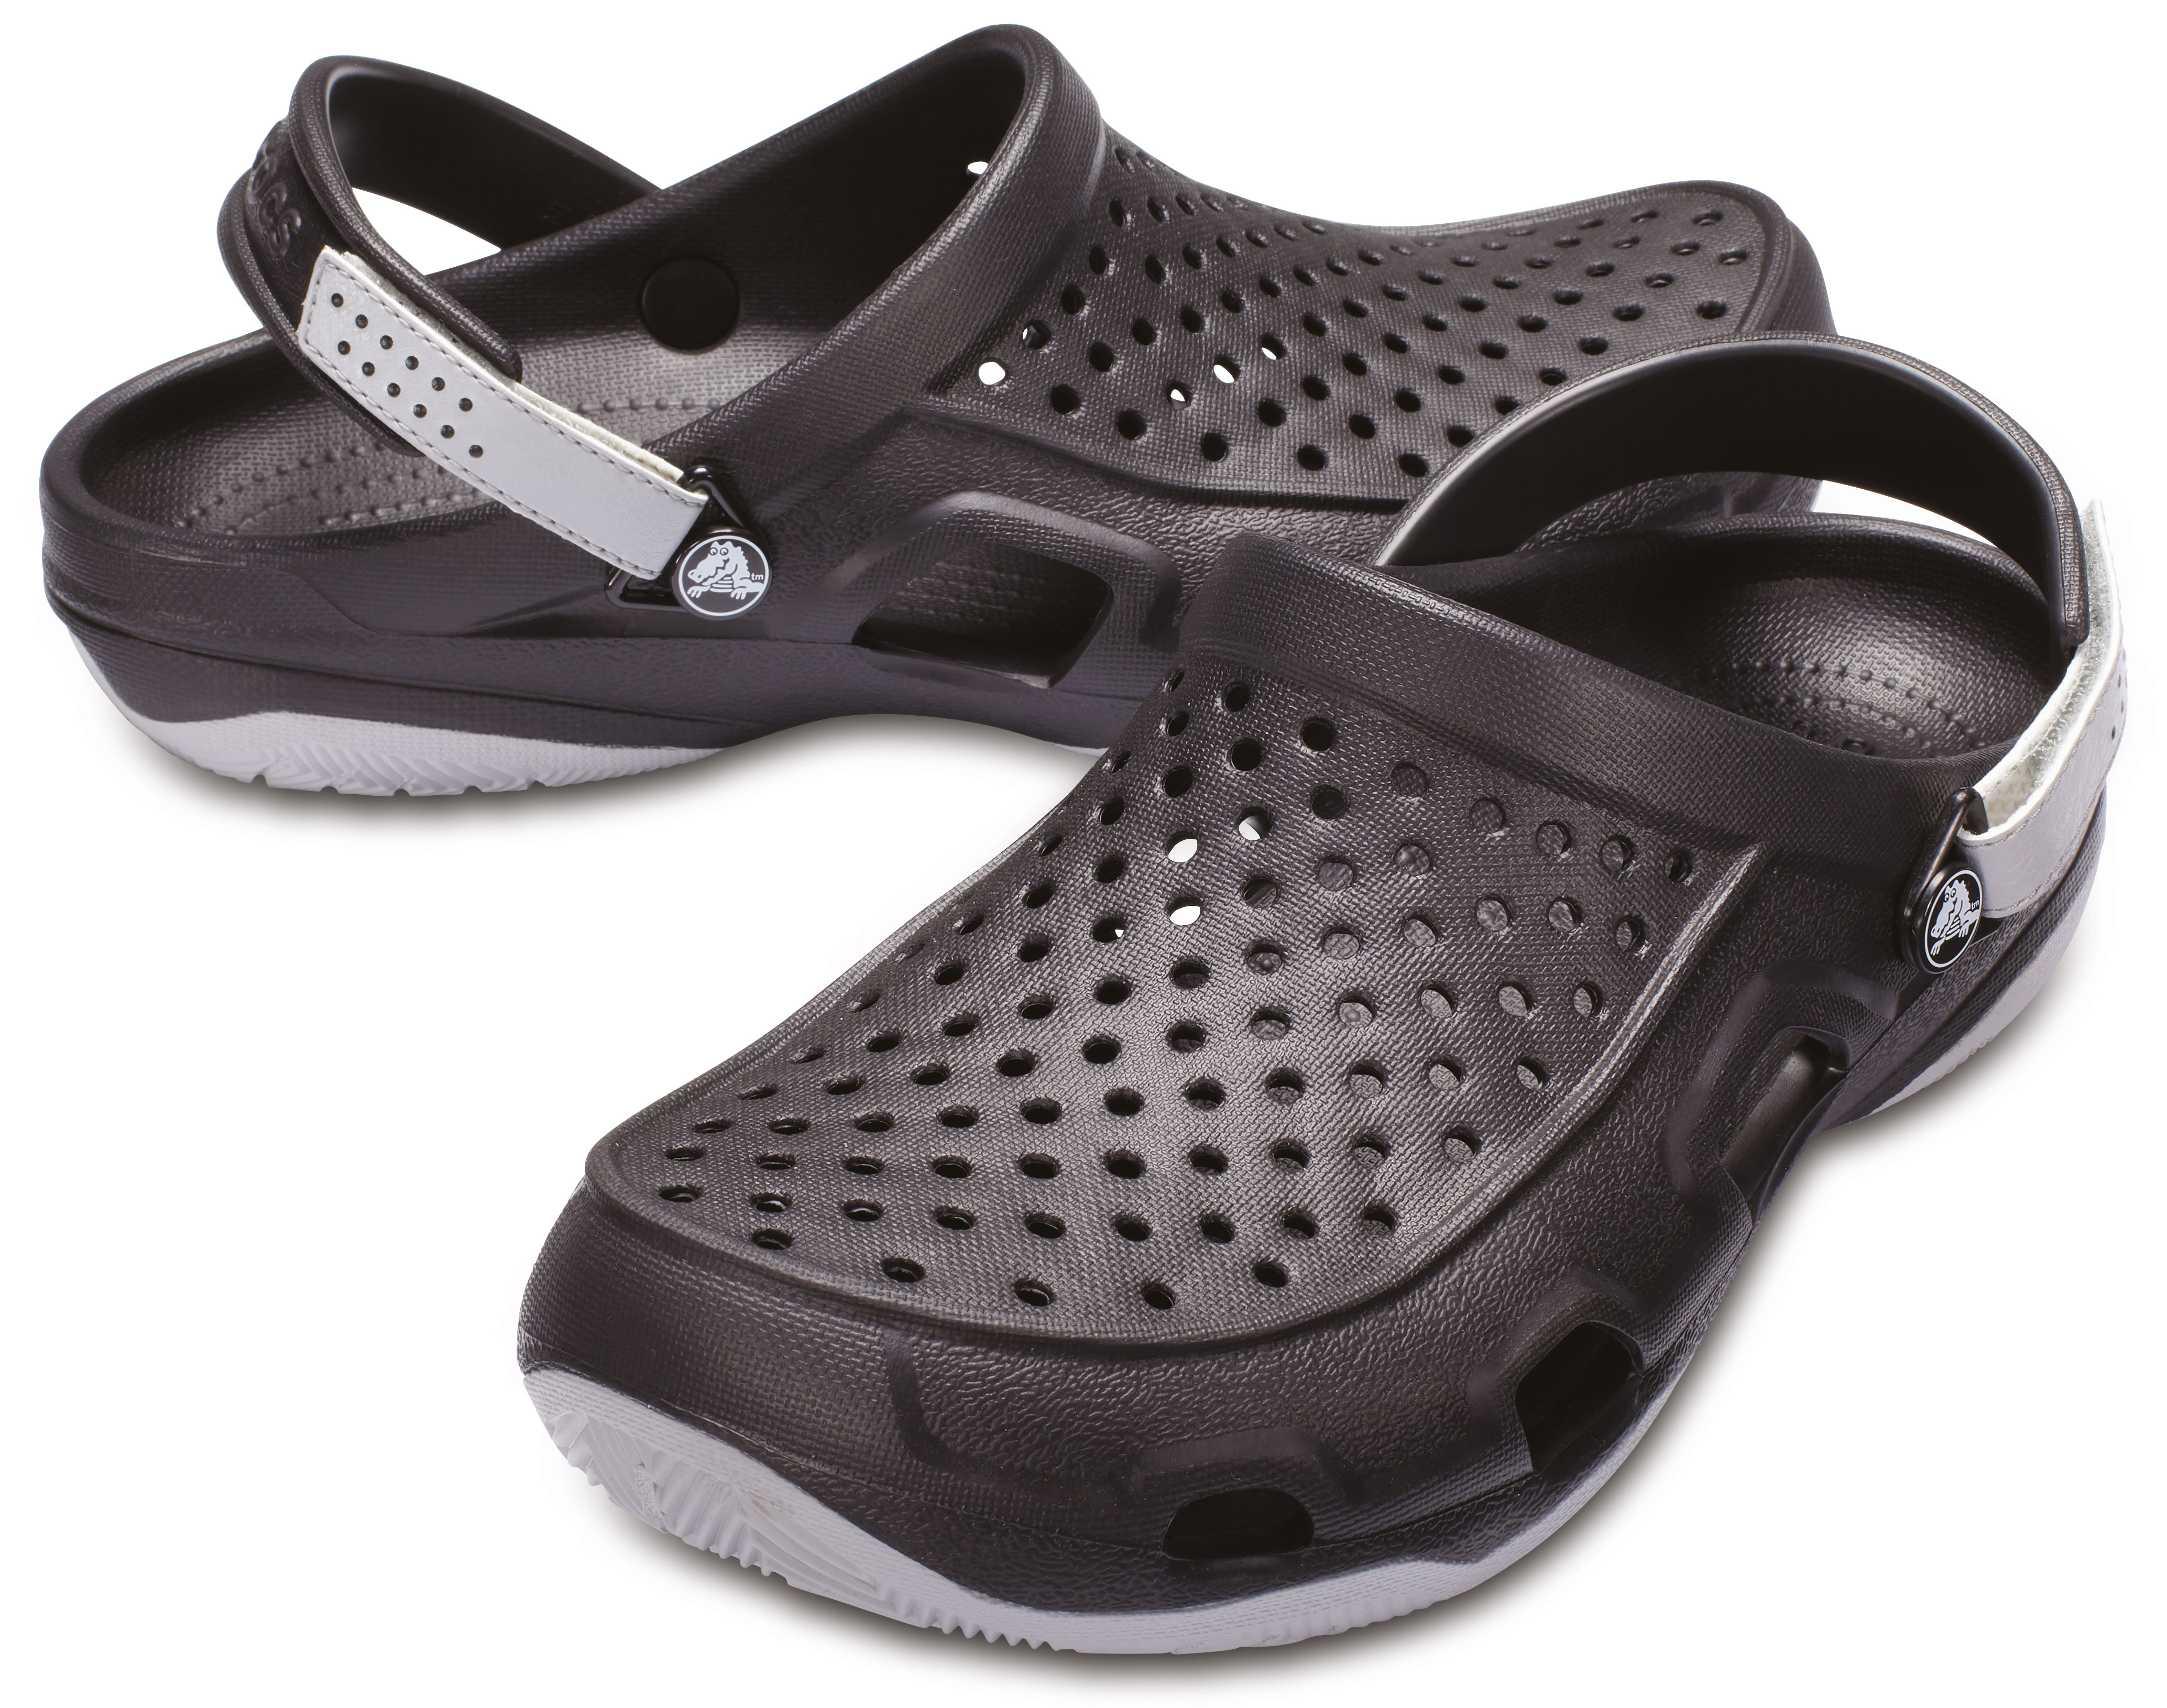 Сабо крокс мужские. Крокс сабо Блэк. Crocs Swiftwater Clog. Клоги мужские Crocs. Обувь крокс мужские обувь крокс.